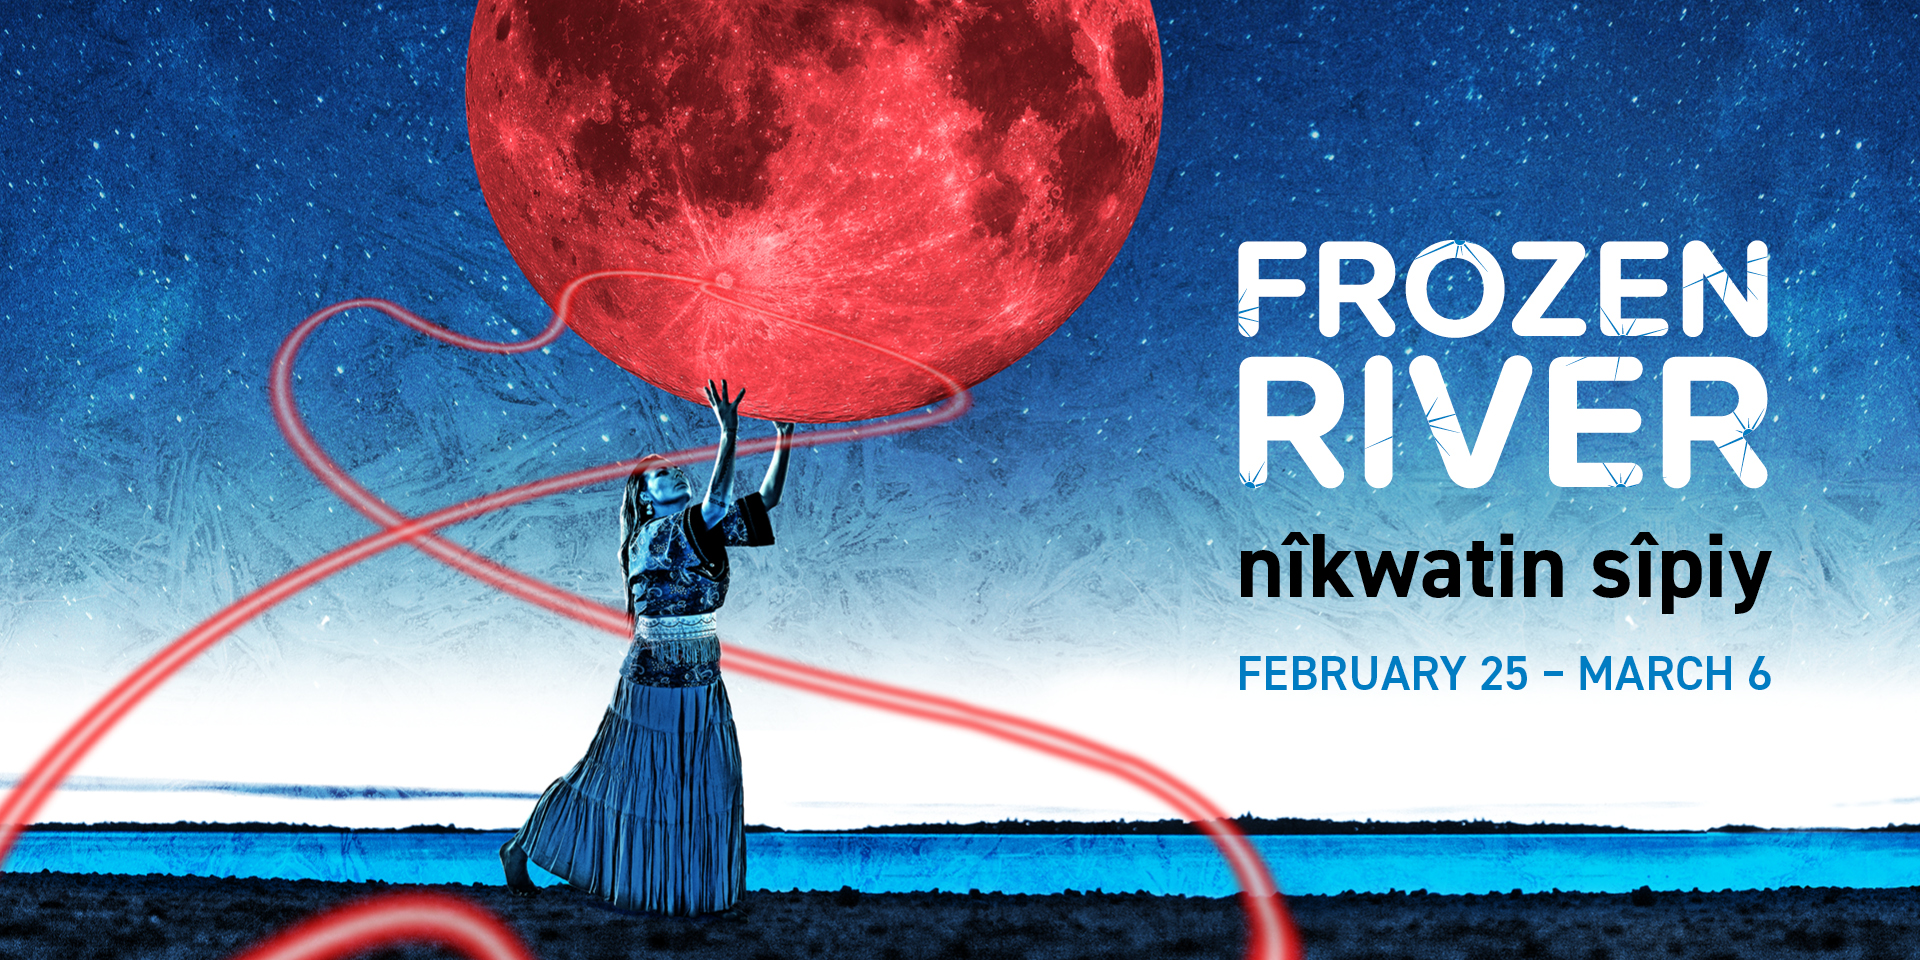 Frozen River nîkwatin sîpiy, February 25 – March 6